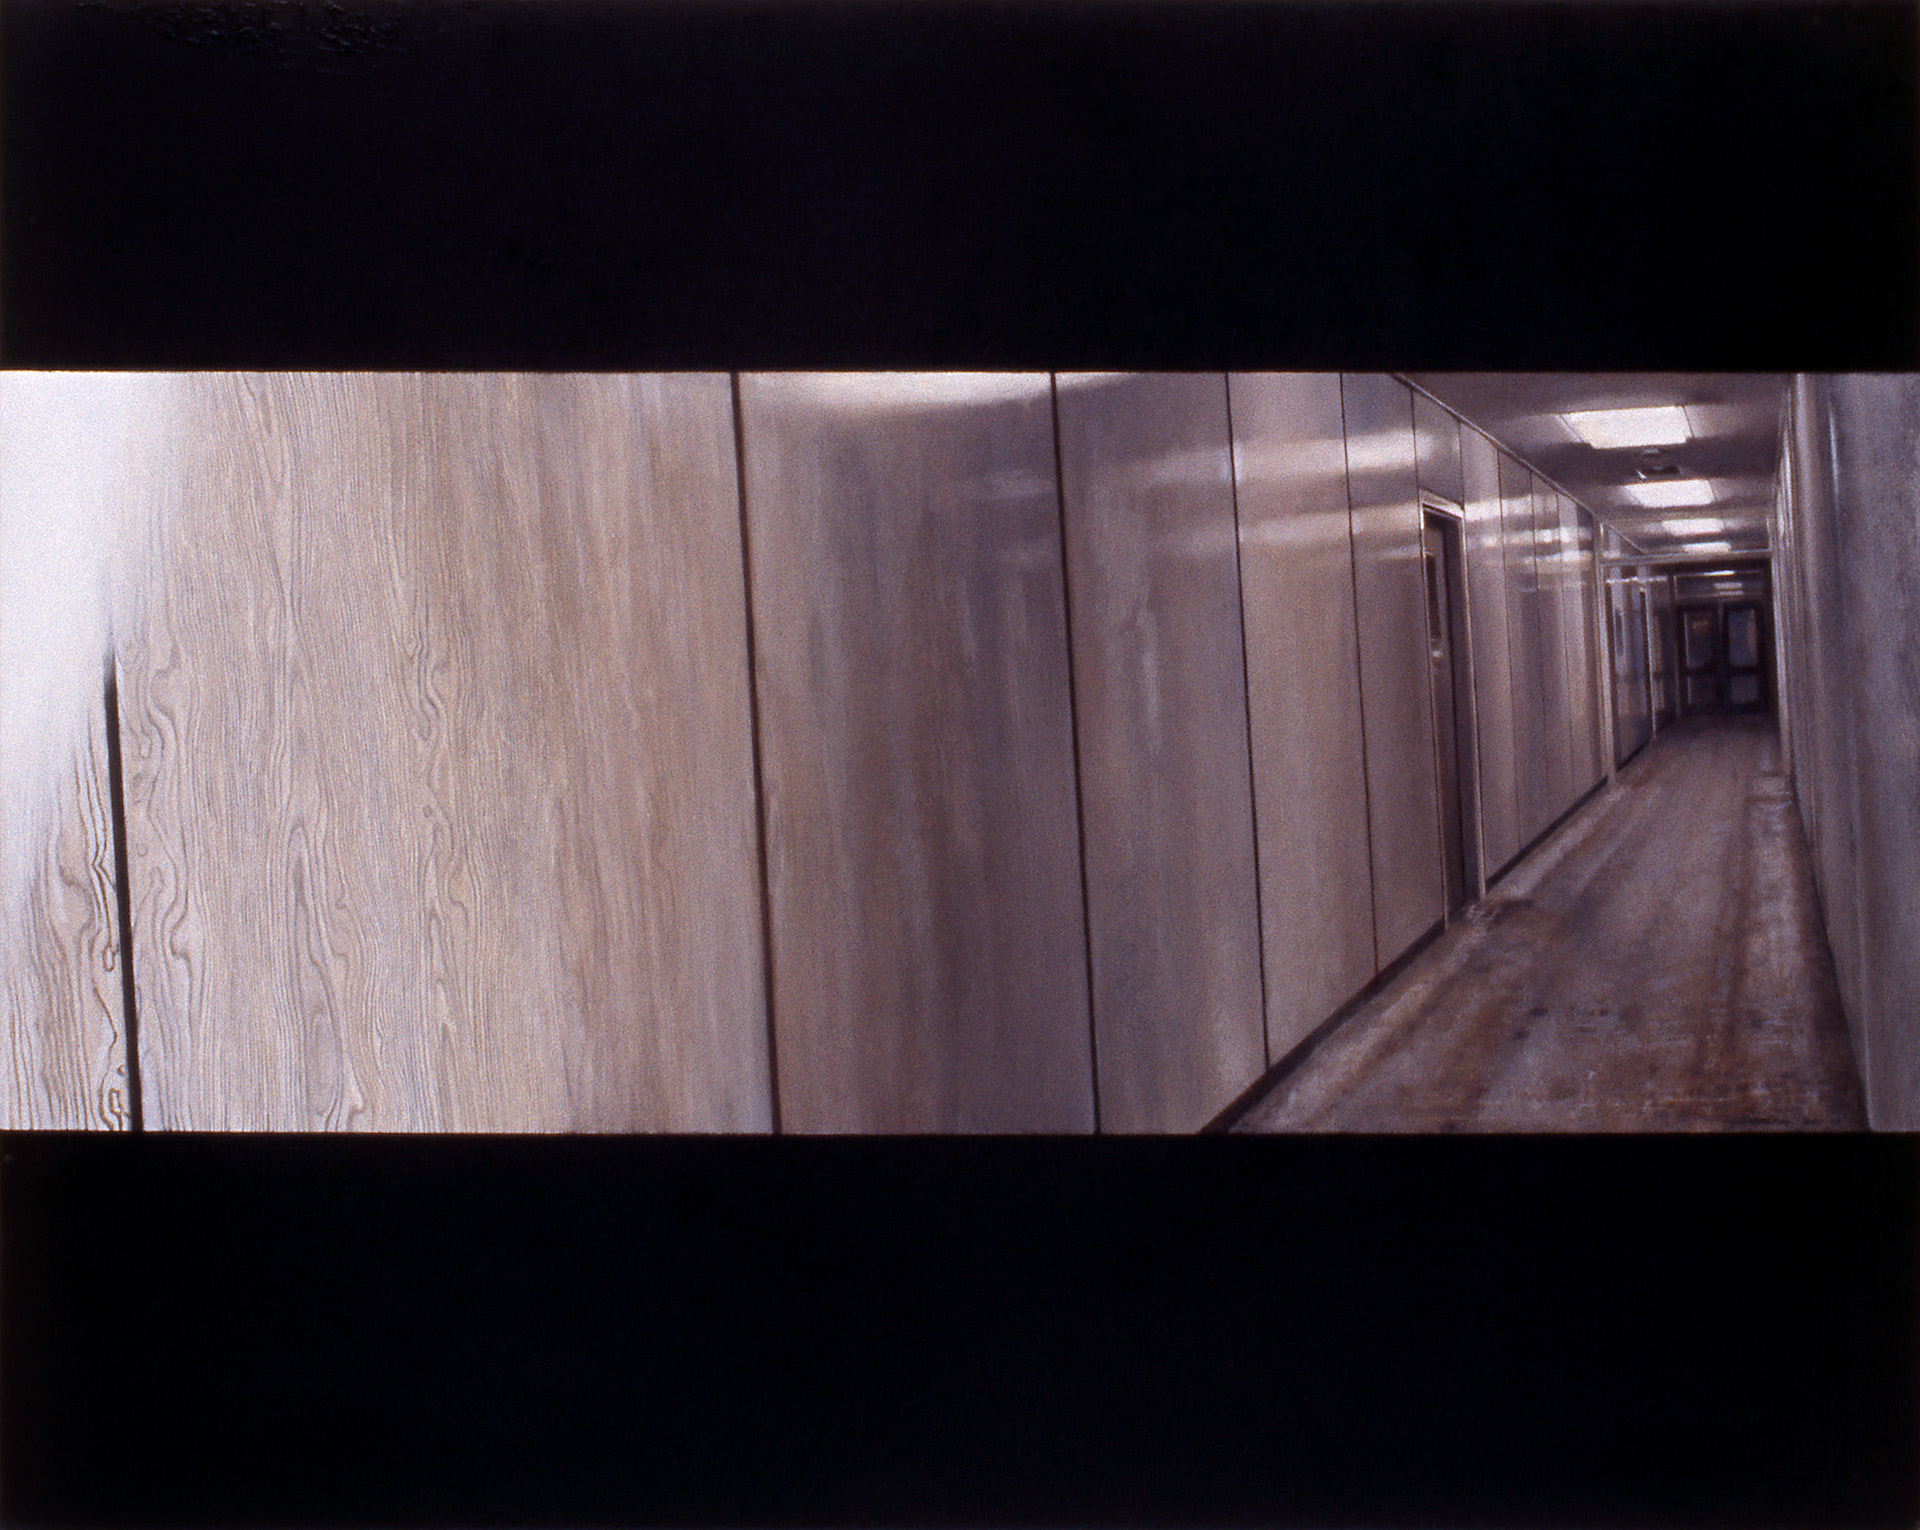 Scene (Grey Corridor), 2001, oil on canvas, 610 x 760mm, private collection